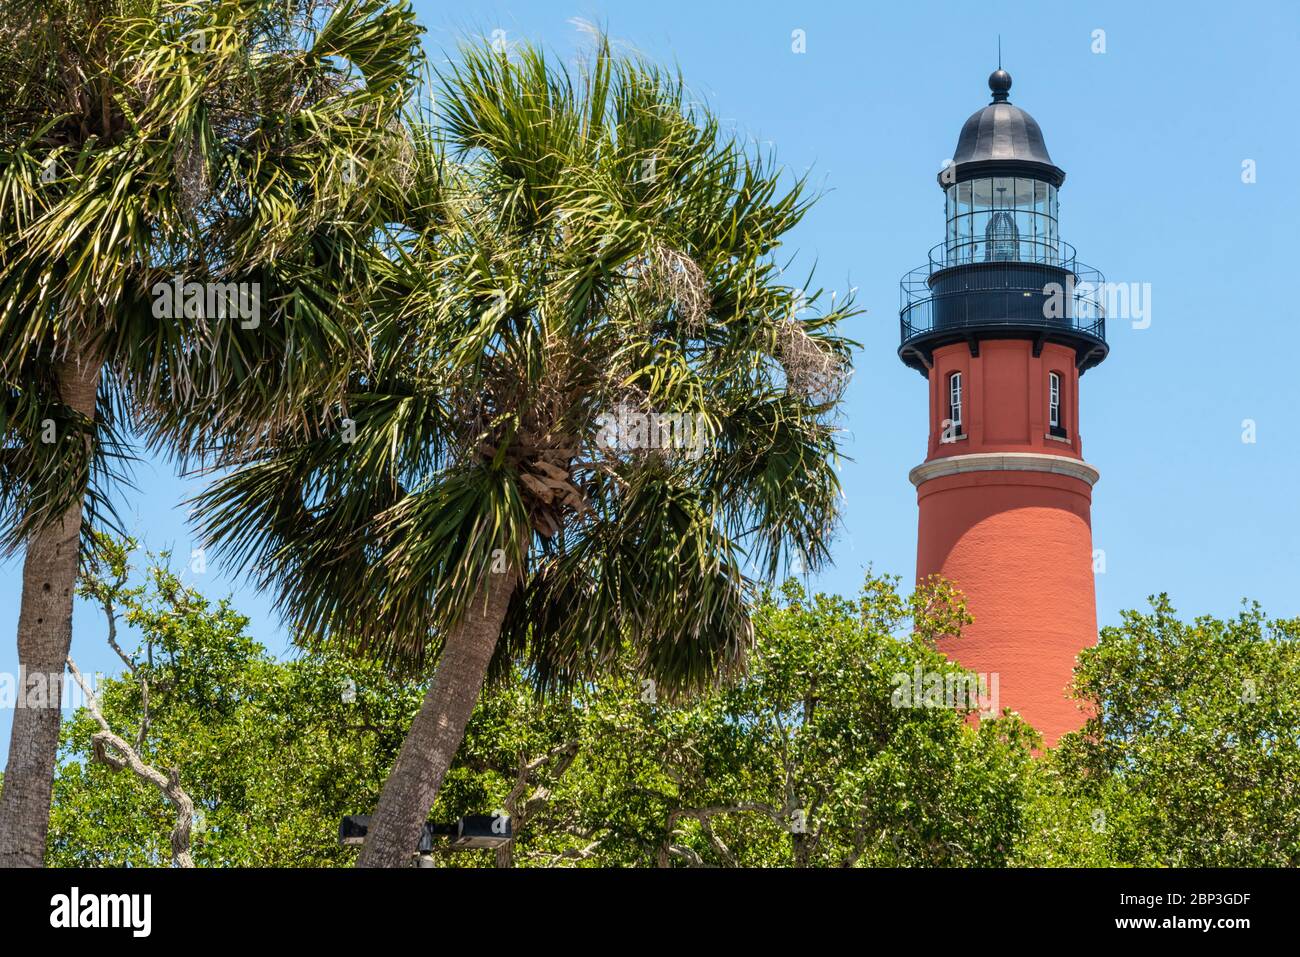 Le phare historique de Ponce Inlet, achevé en 1887, à Ponce Inlet, en Floride, entre Daytona Beach Shores et New Smyrna Beach. (ÉTATS-UNIS) Banque D'Images